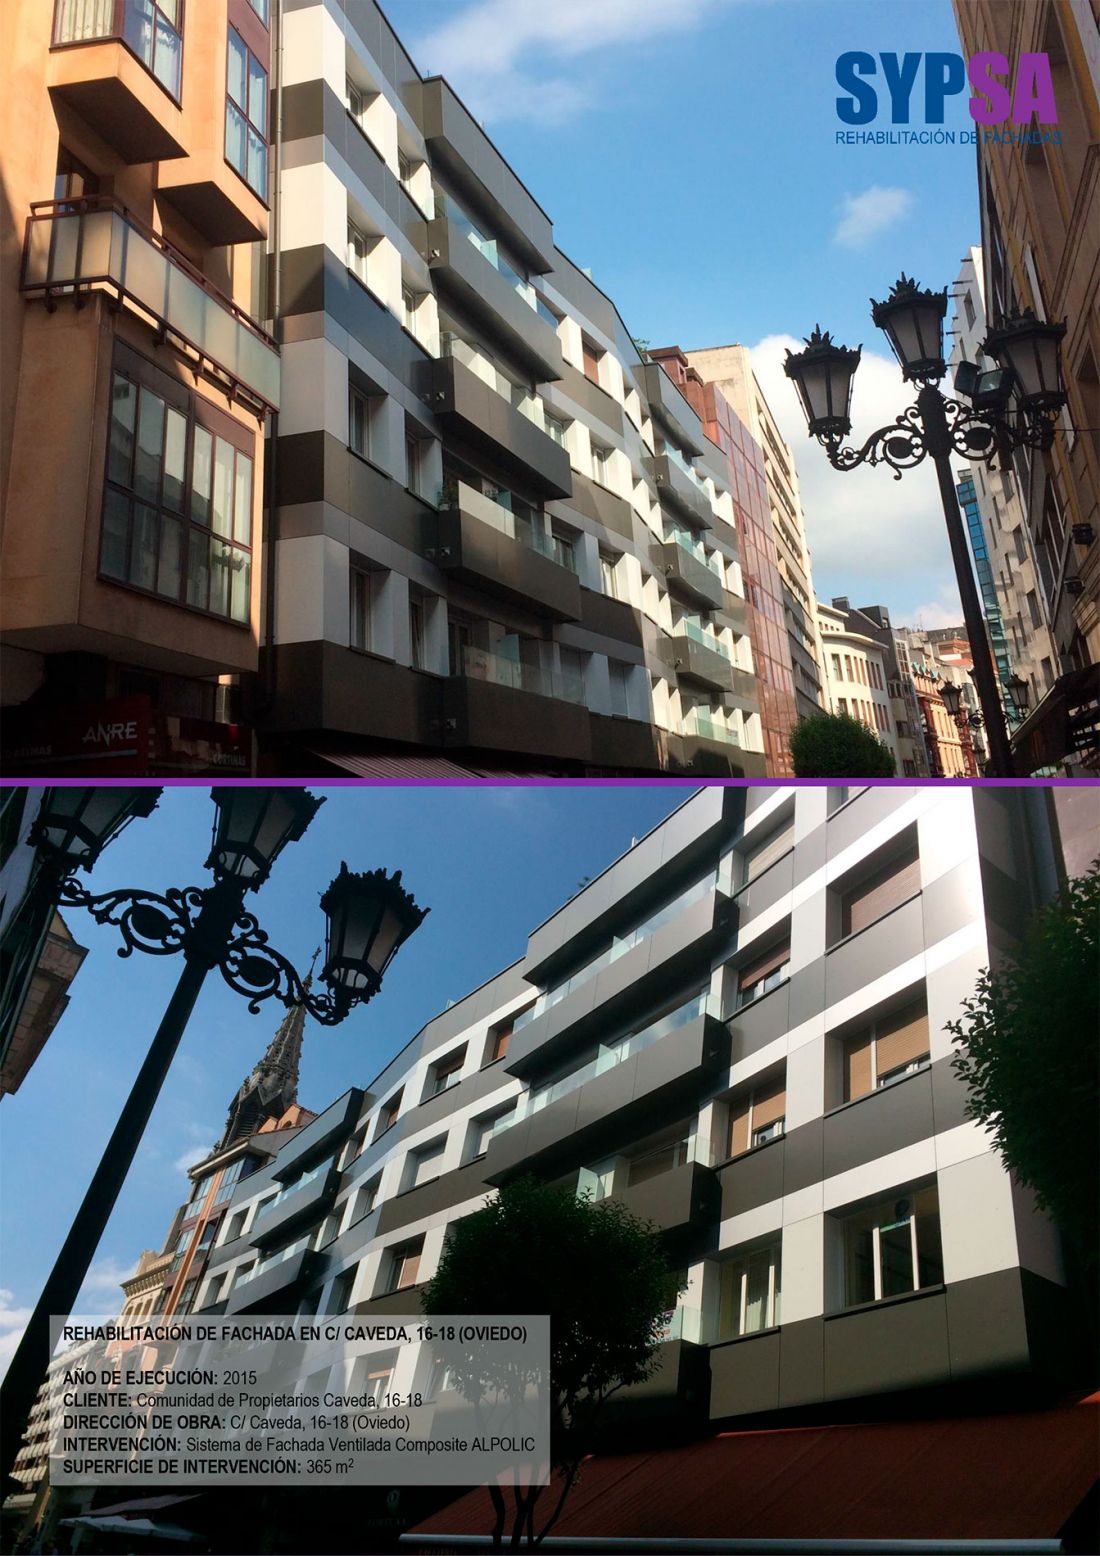 Rehabilitación de fachada en C/Caveda, 16 18 (Oviedo)